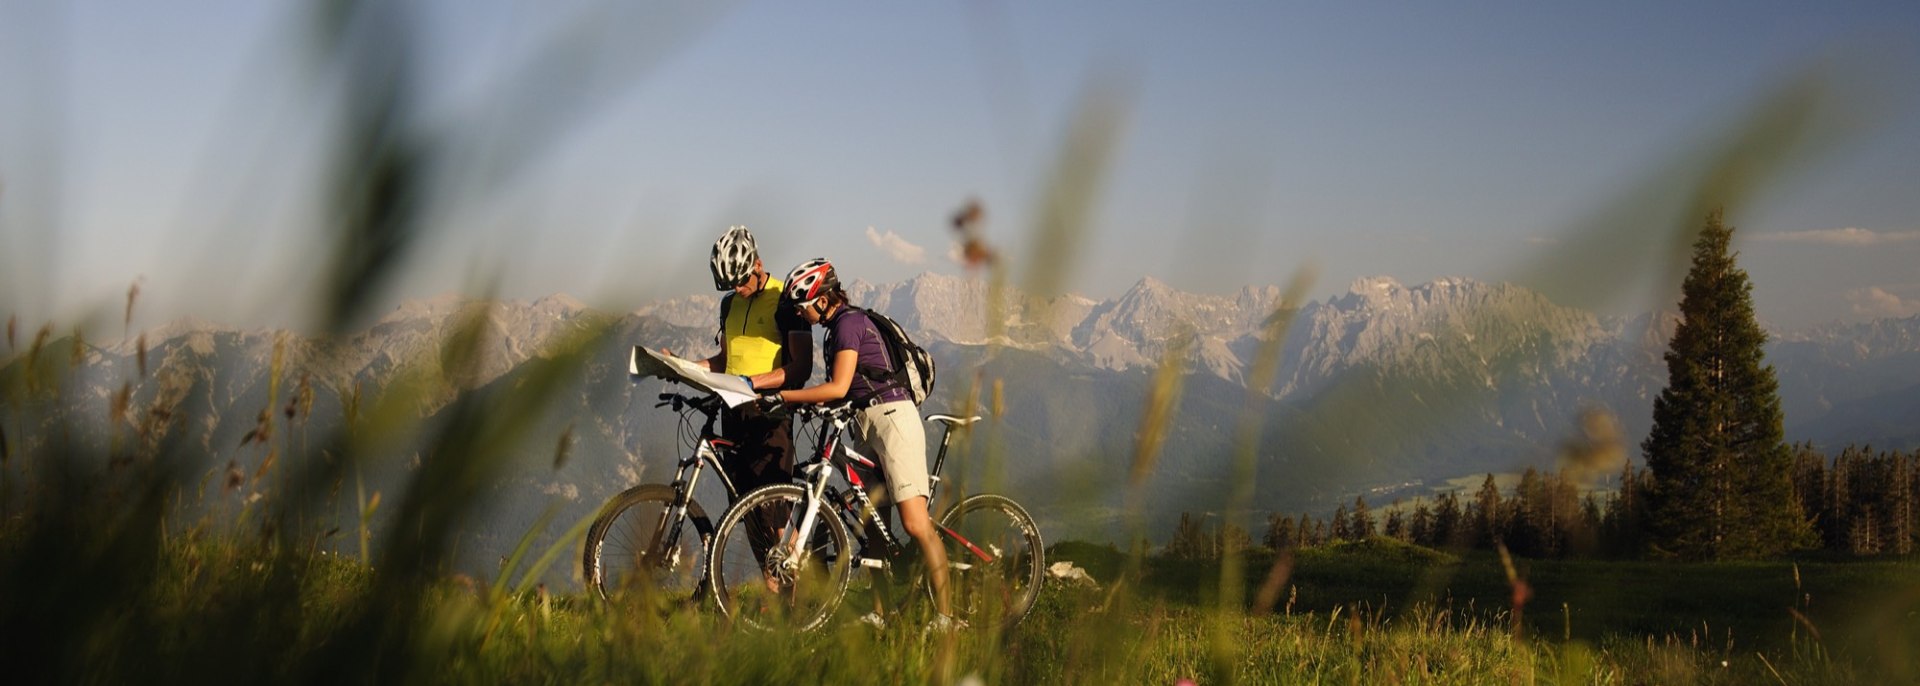 Von Badeseen und Buckelwiesen über Almen und Gipfel - Moutainbiken rund um Mittnewlad, Krün und Wallgau, © Alpenwelt Karwendel | Wolfgang Ehn